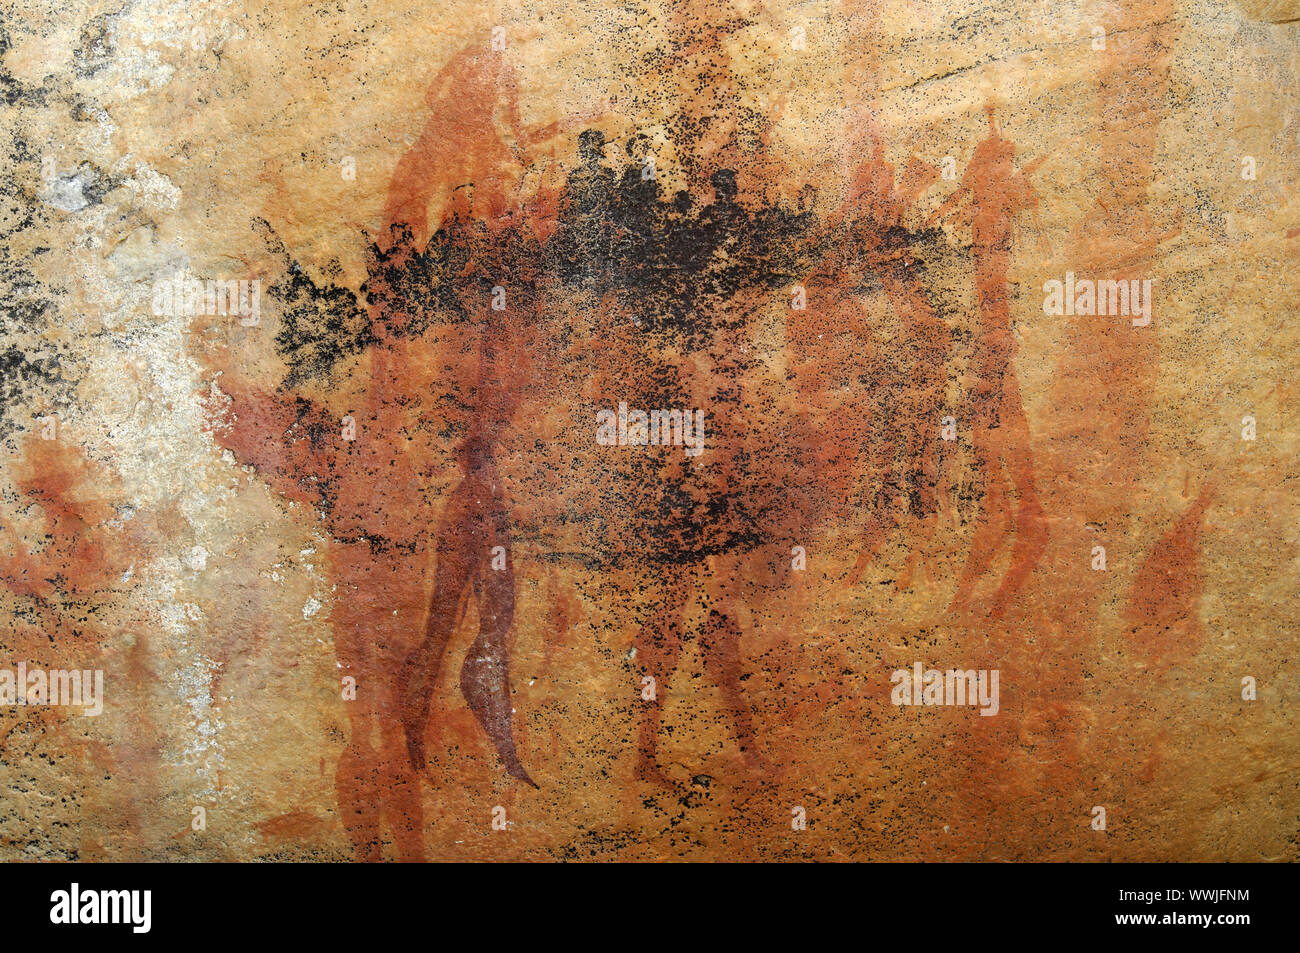 La représentation de personnes, San peinture rupestre, Afrique du Sud Banque D'Images